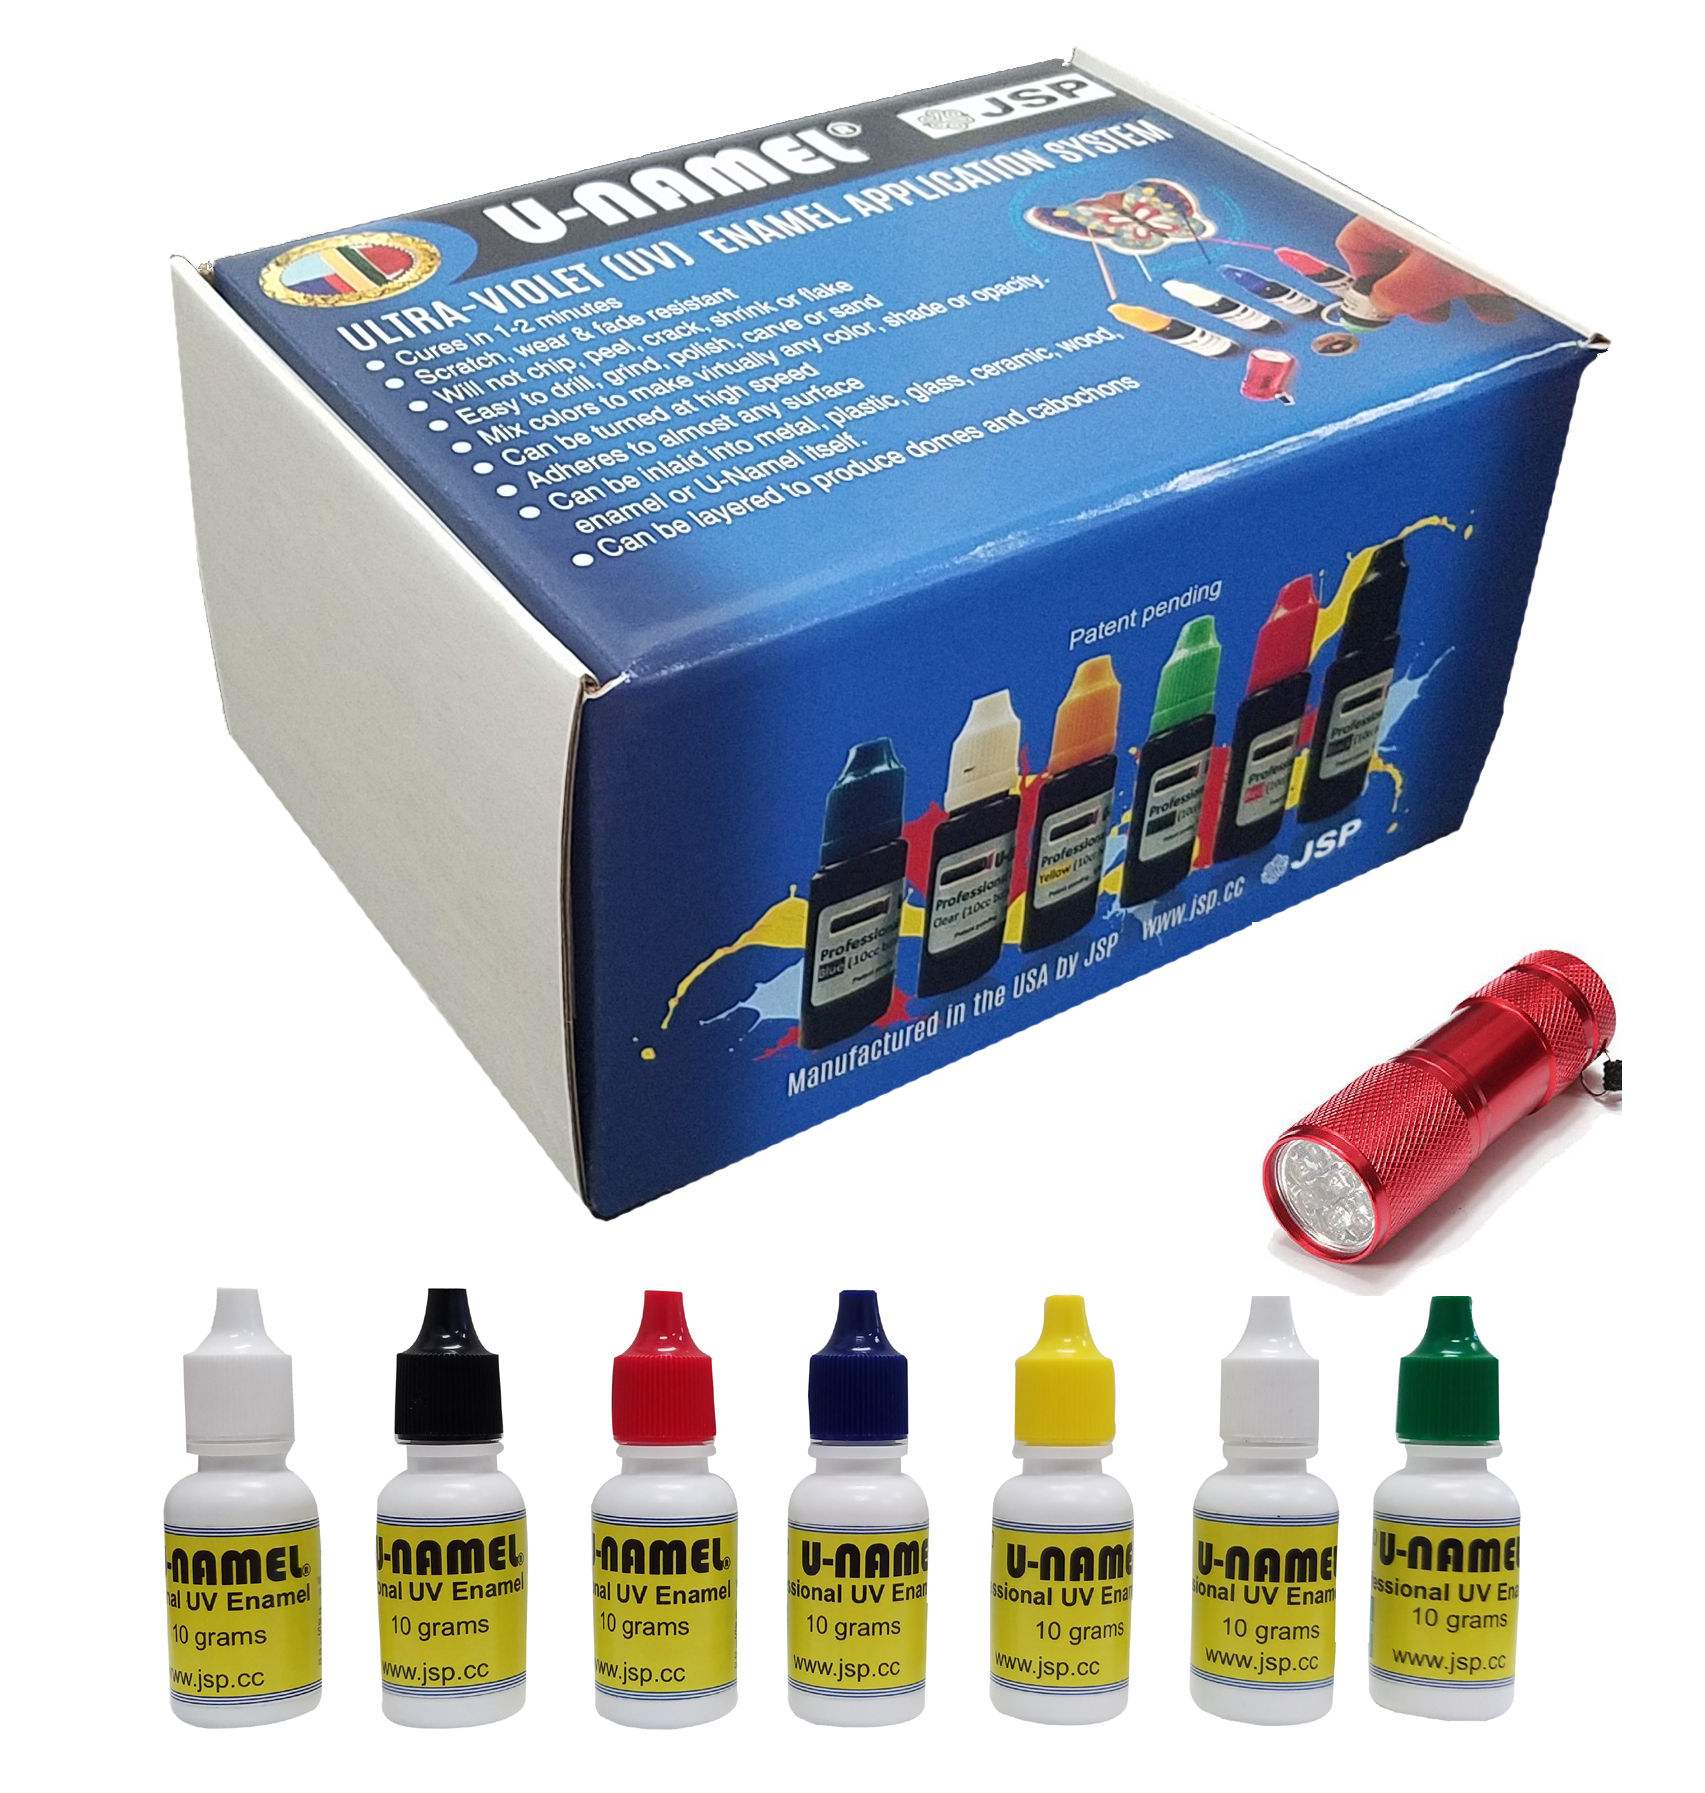 U-NAMEL® STARTER kit, 7 colors + led